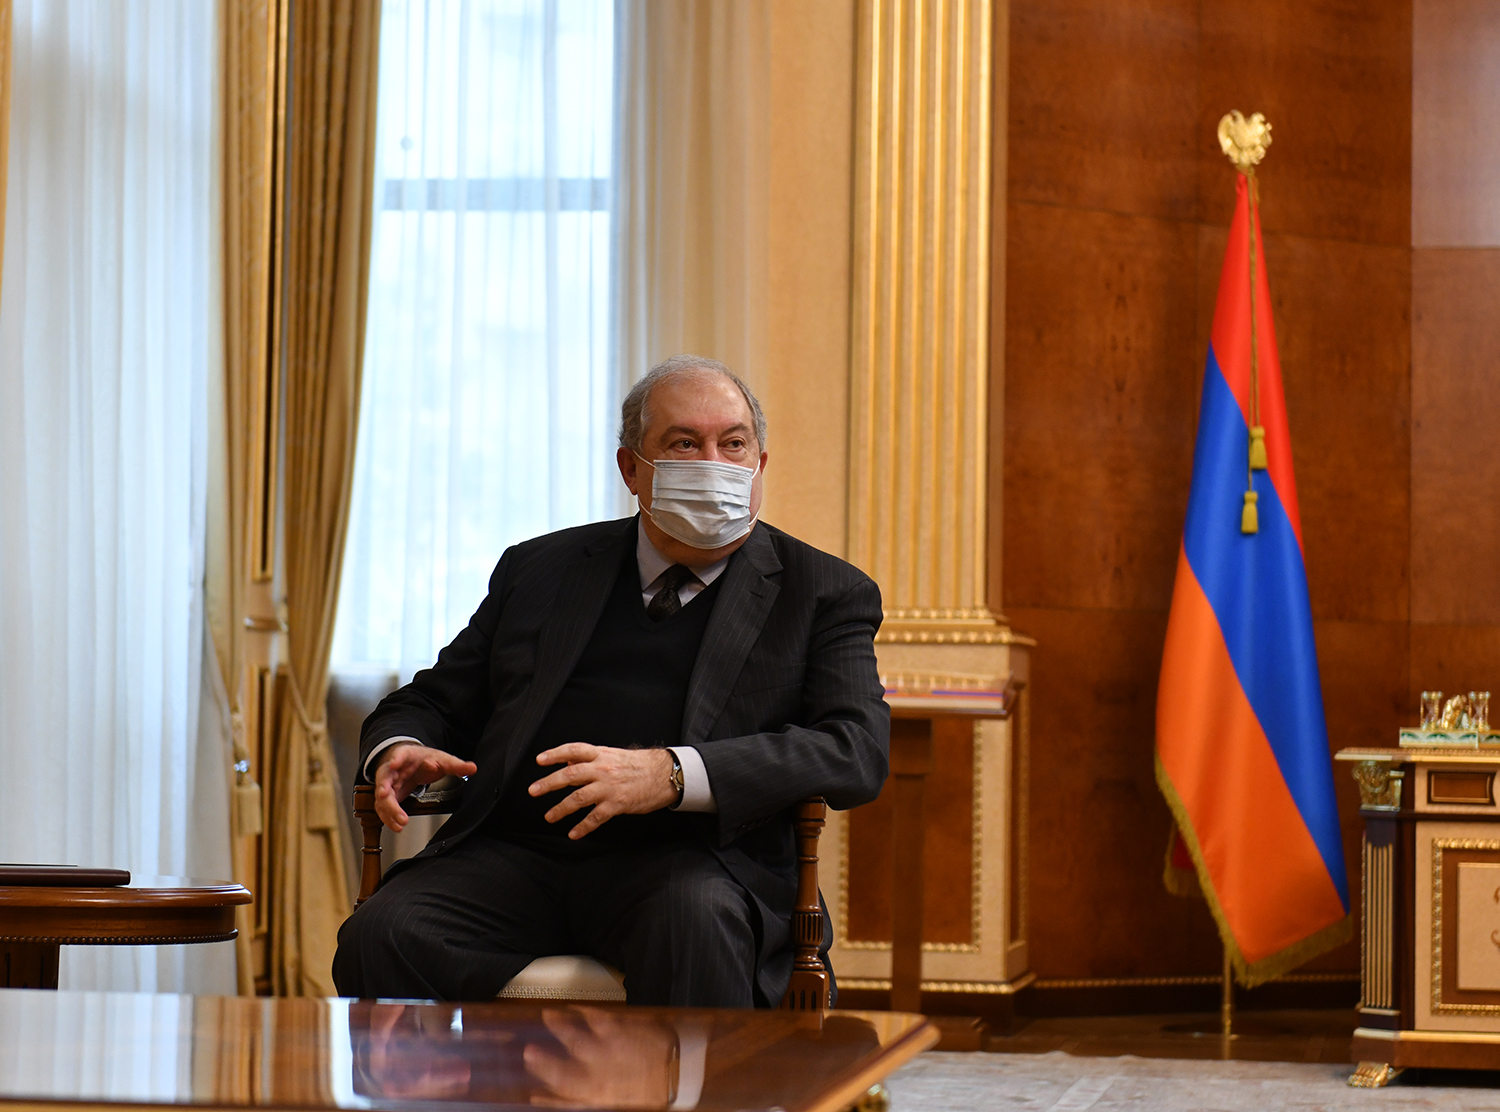 Արմեն Սարգսյանն ընդունել է «Արդար Հայաստան» կուսակցության ներկայացուցիչներին